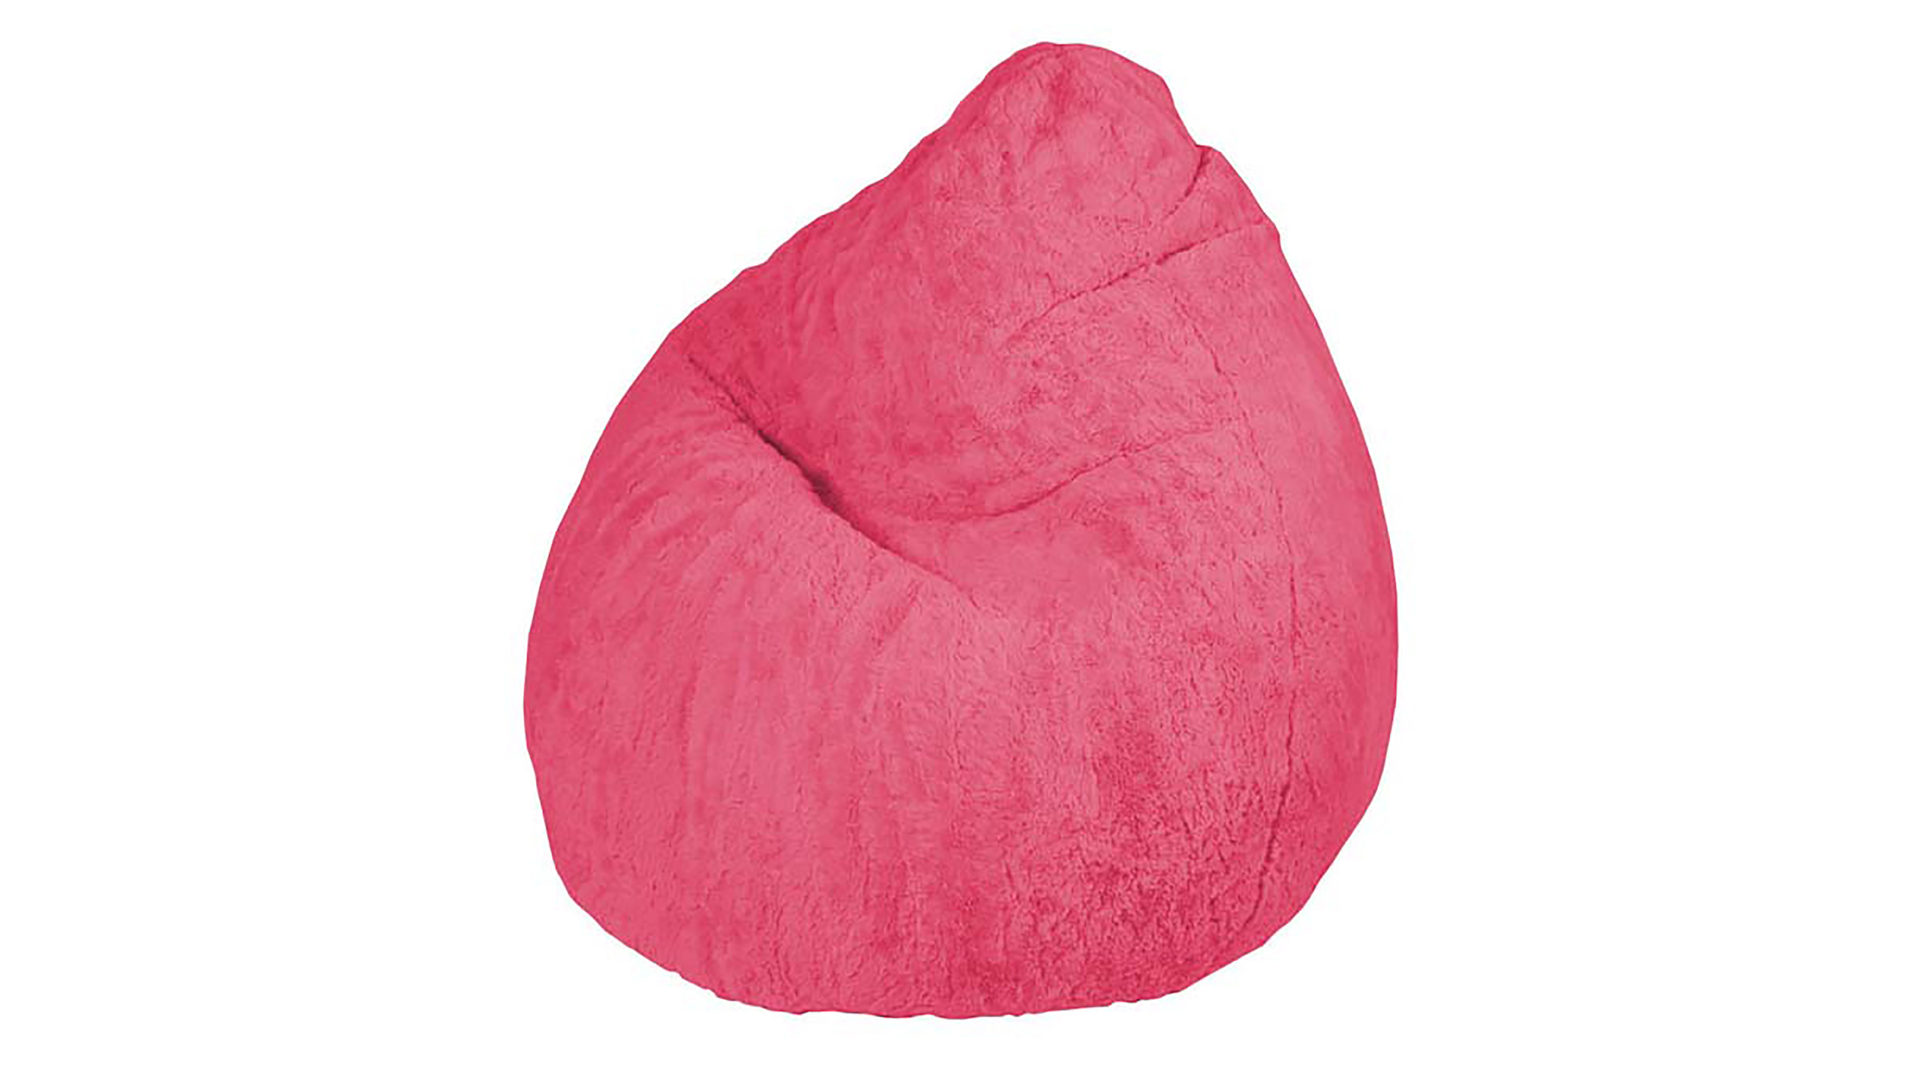 Standard-Sitzsack Magma sitting point aus Stoff in Pink SITTING POINT Plüsch-Sitzsack Fluffy XL als Sitzmöbel pinker Plüschbezug - ca. 220 Liter